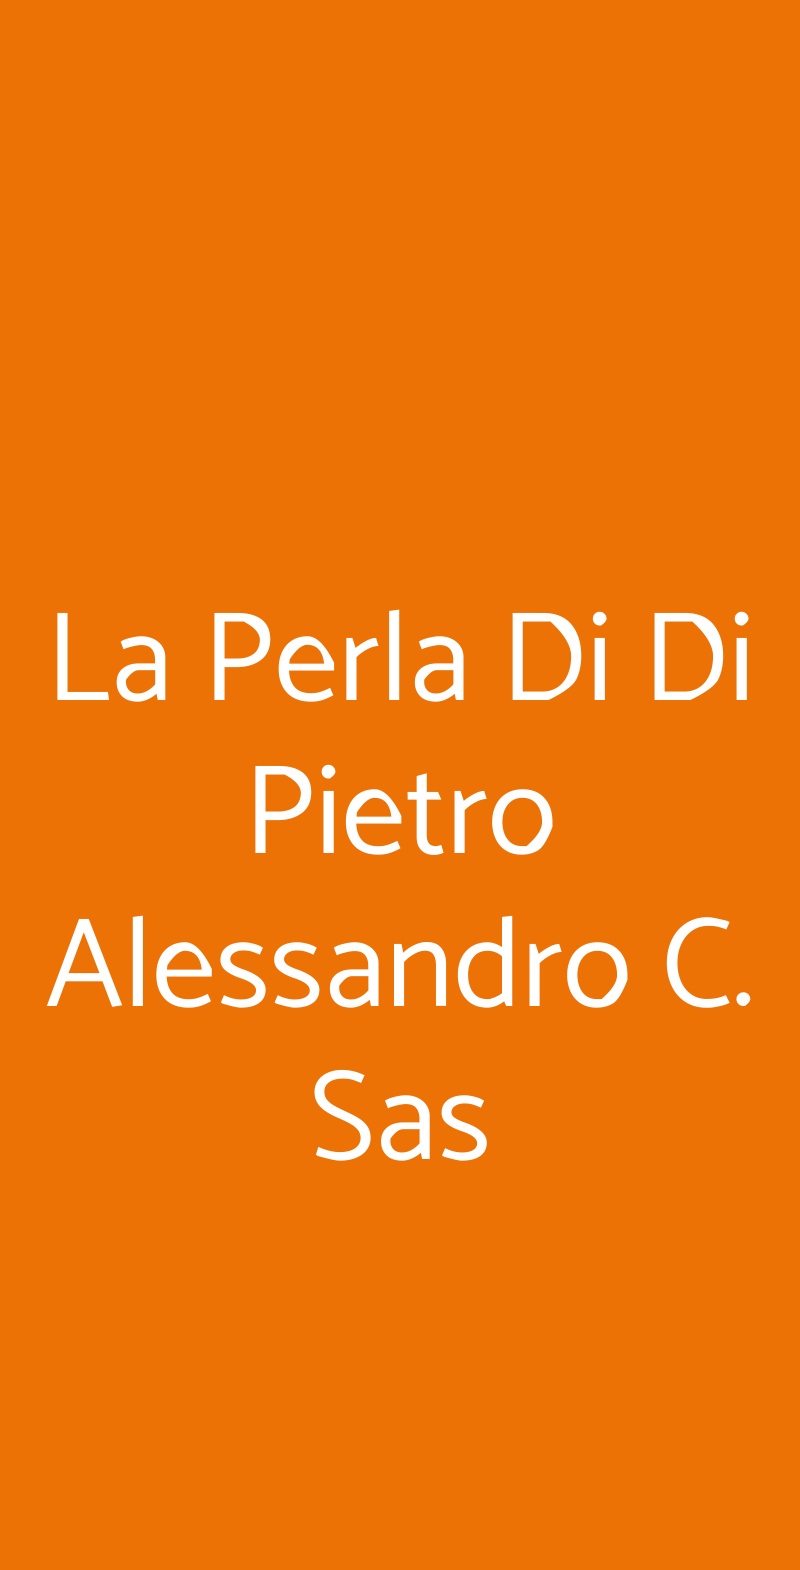 La Perla Di Di Pietro Alessandro C. Sas Silvi Marina menù 1 pagina